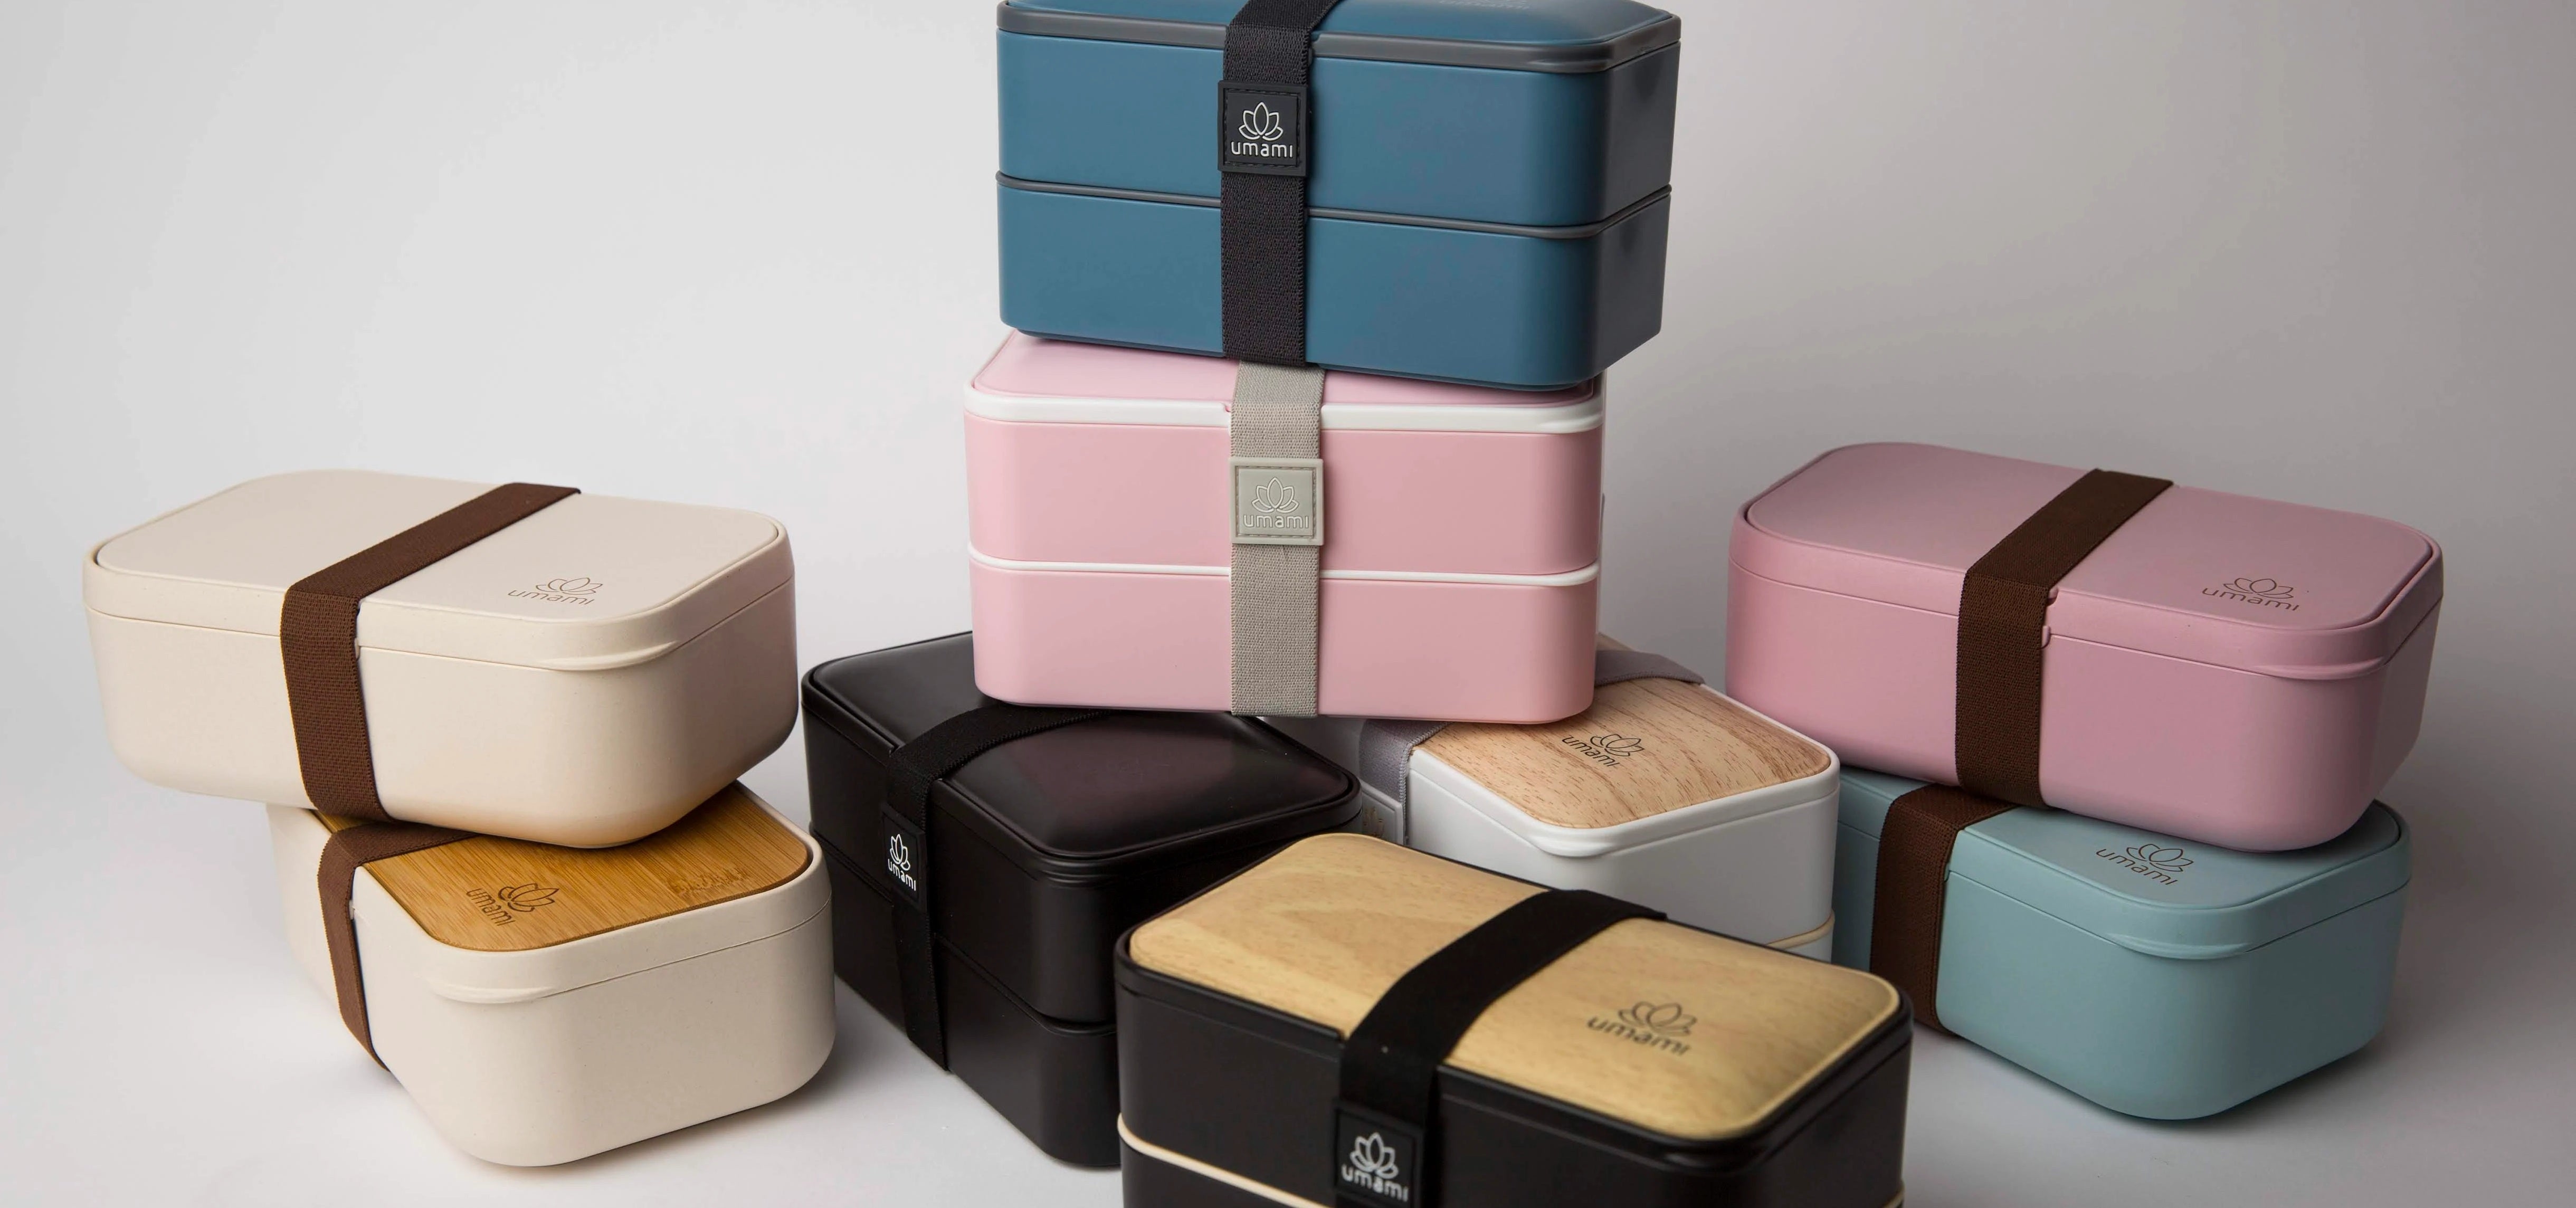 Umami Bento Box wholesale products